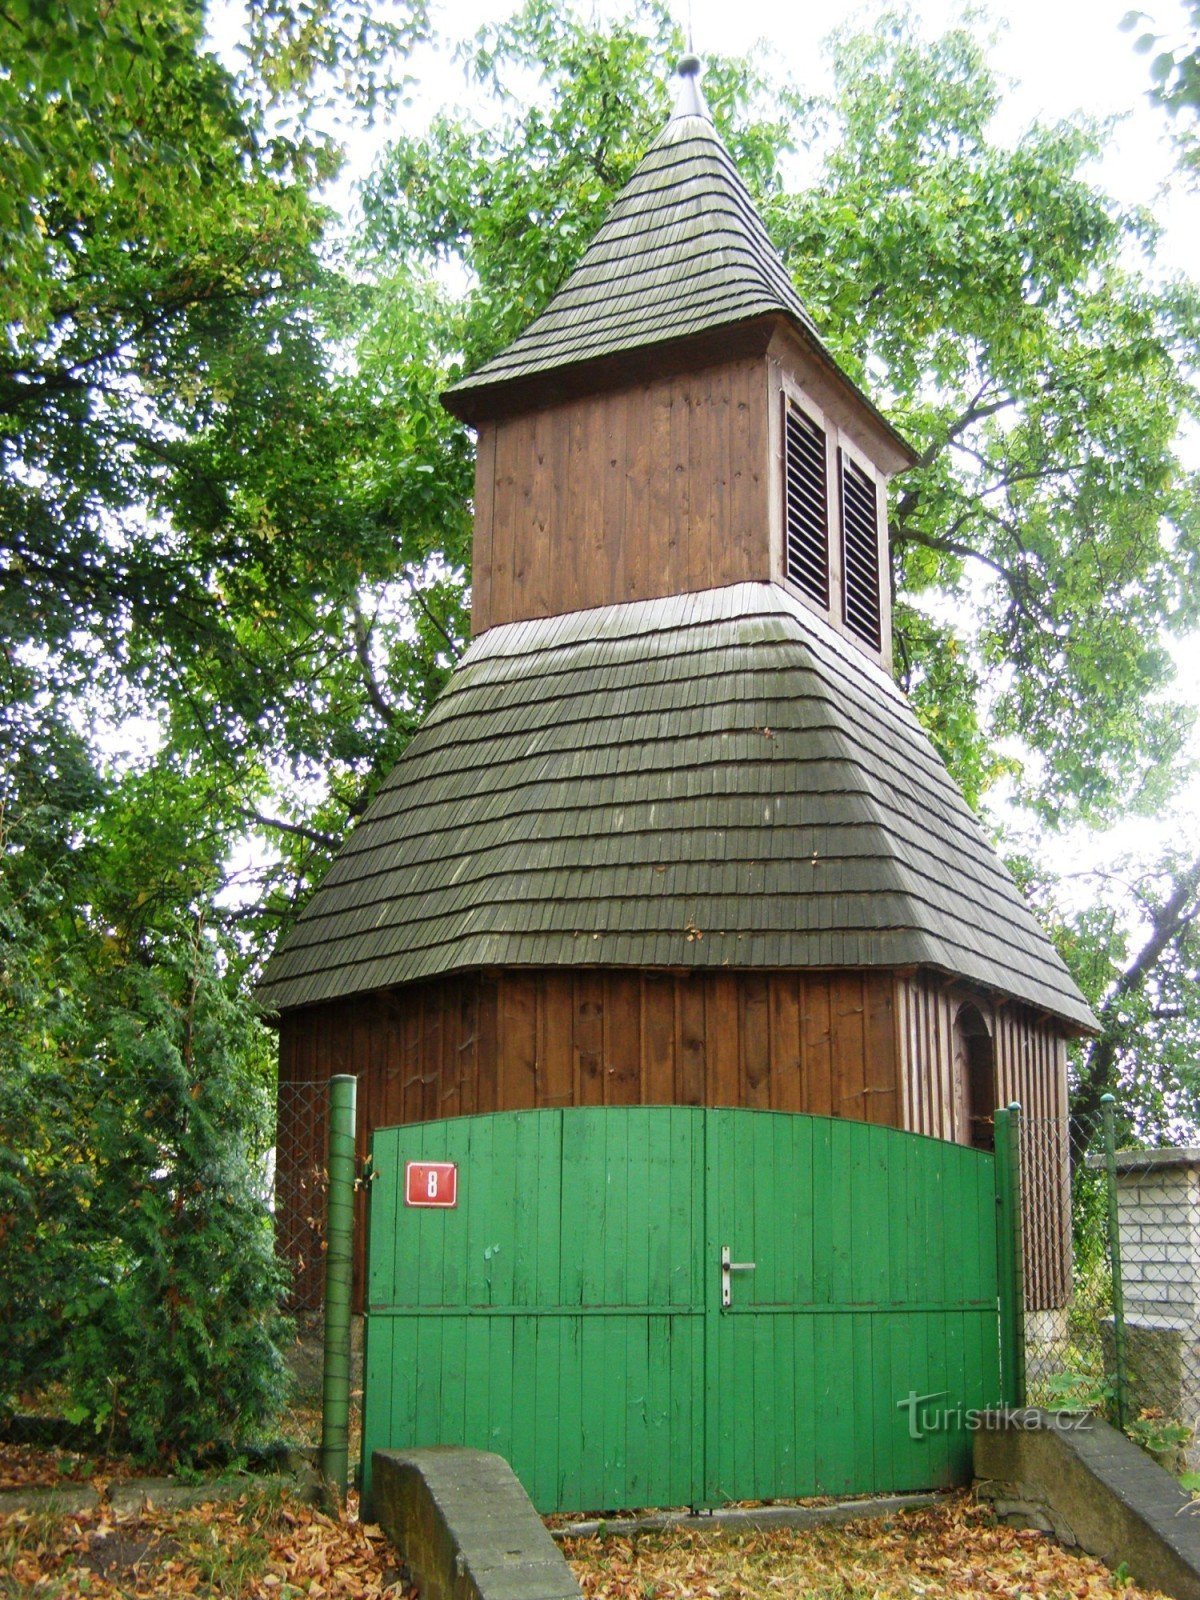 Skrivany - torre do sino de madeira